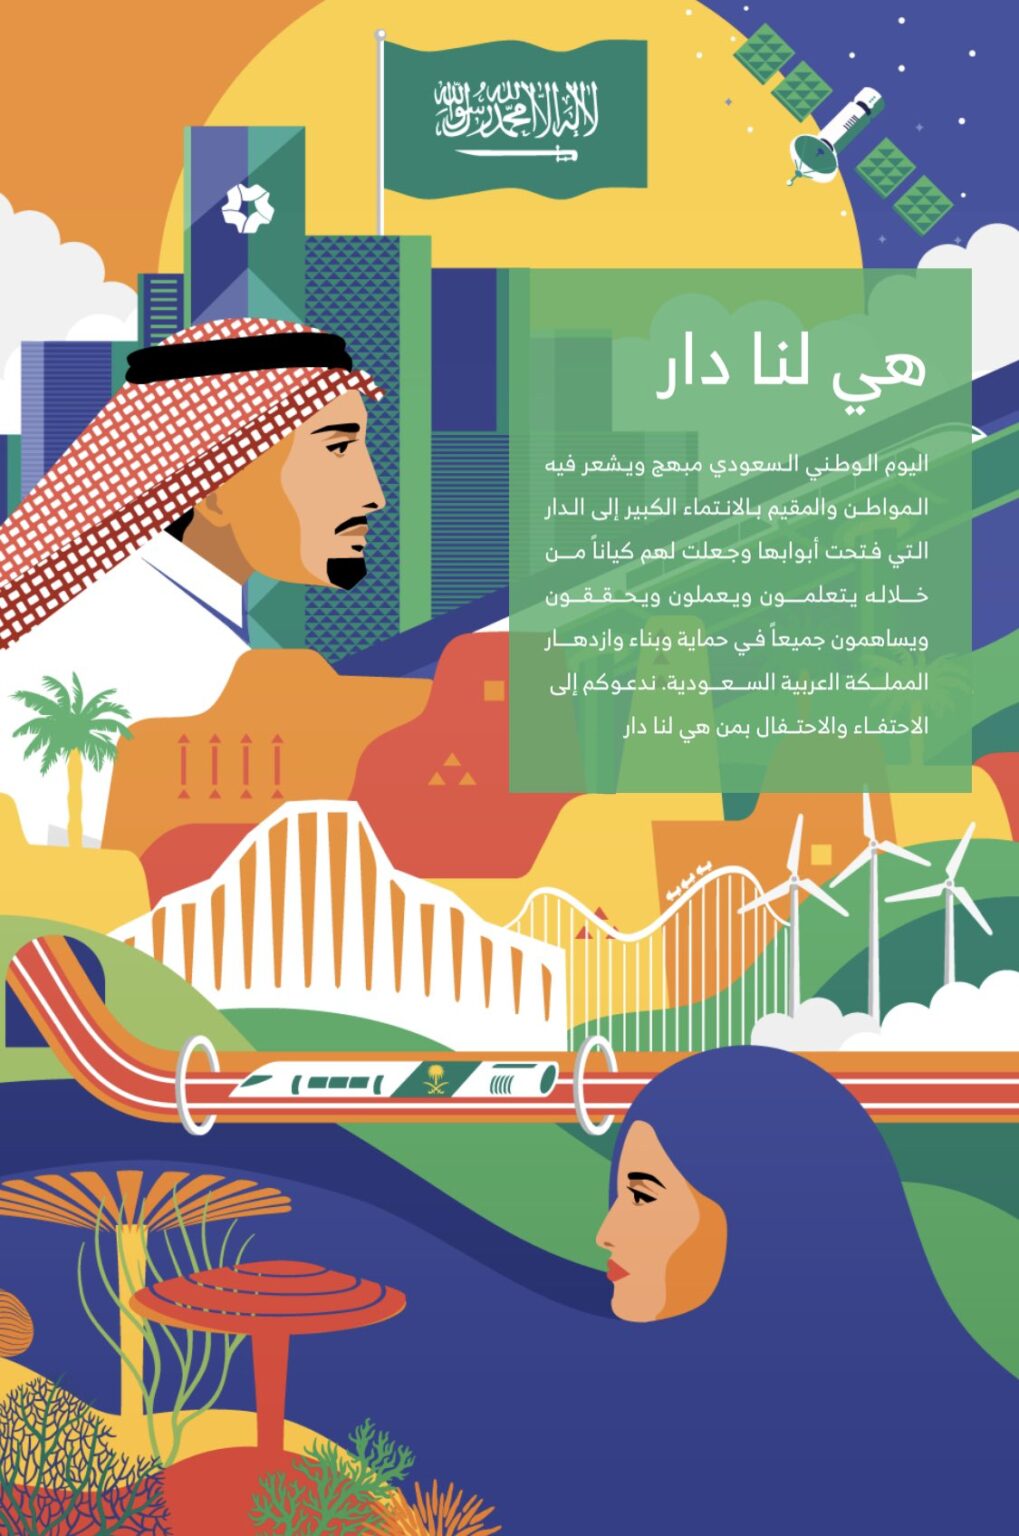 صور شعار اليوم الوطني 91 السعودي هي لنا دار 1443 2021 الصفحة العربية